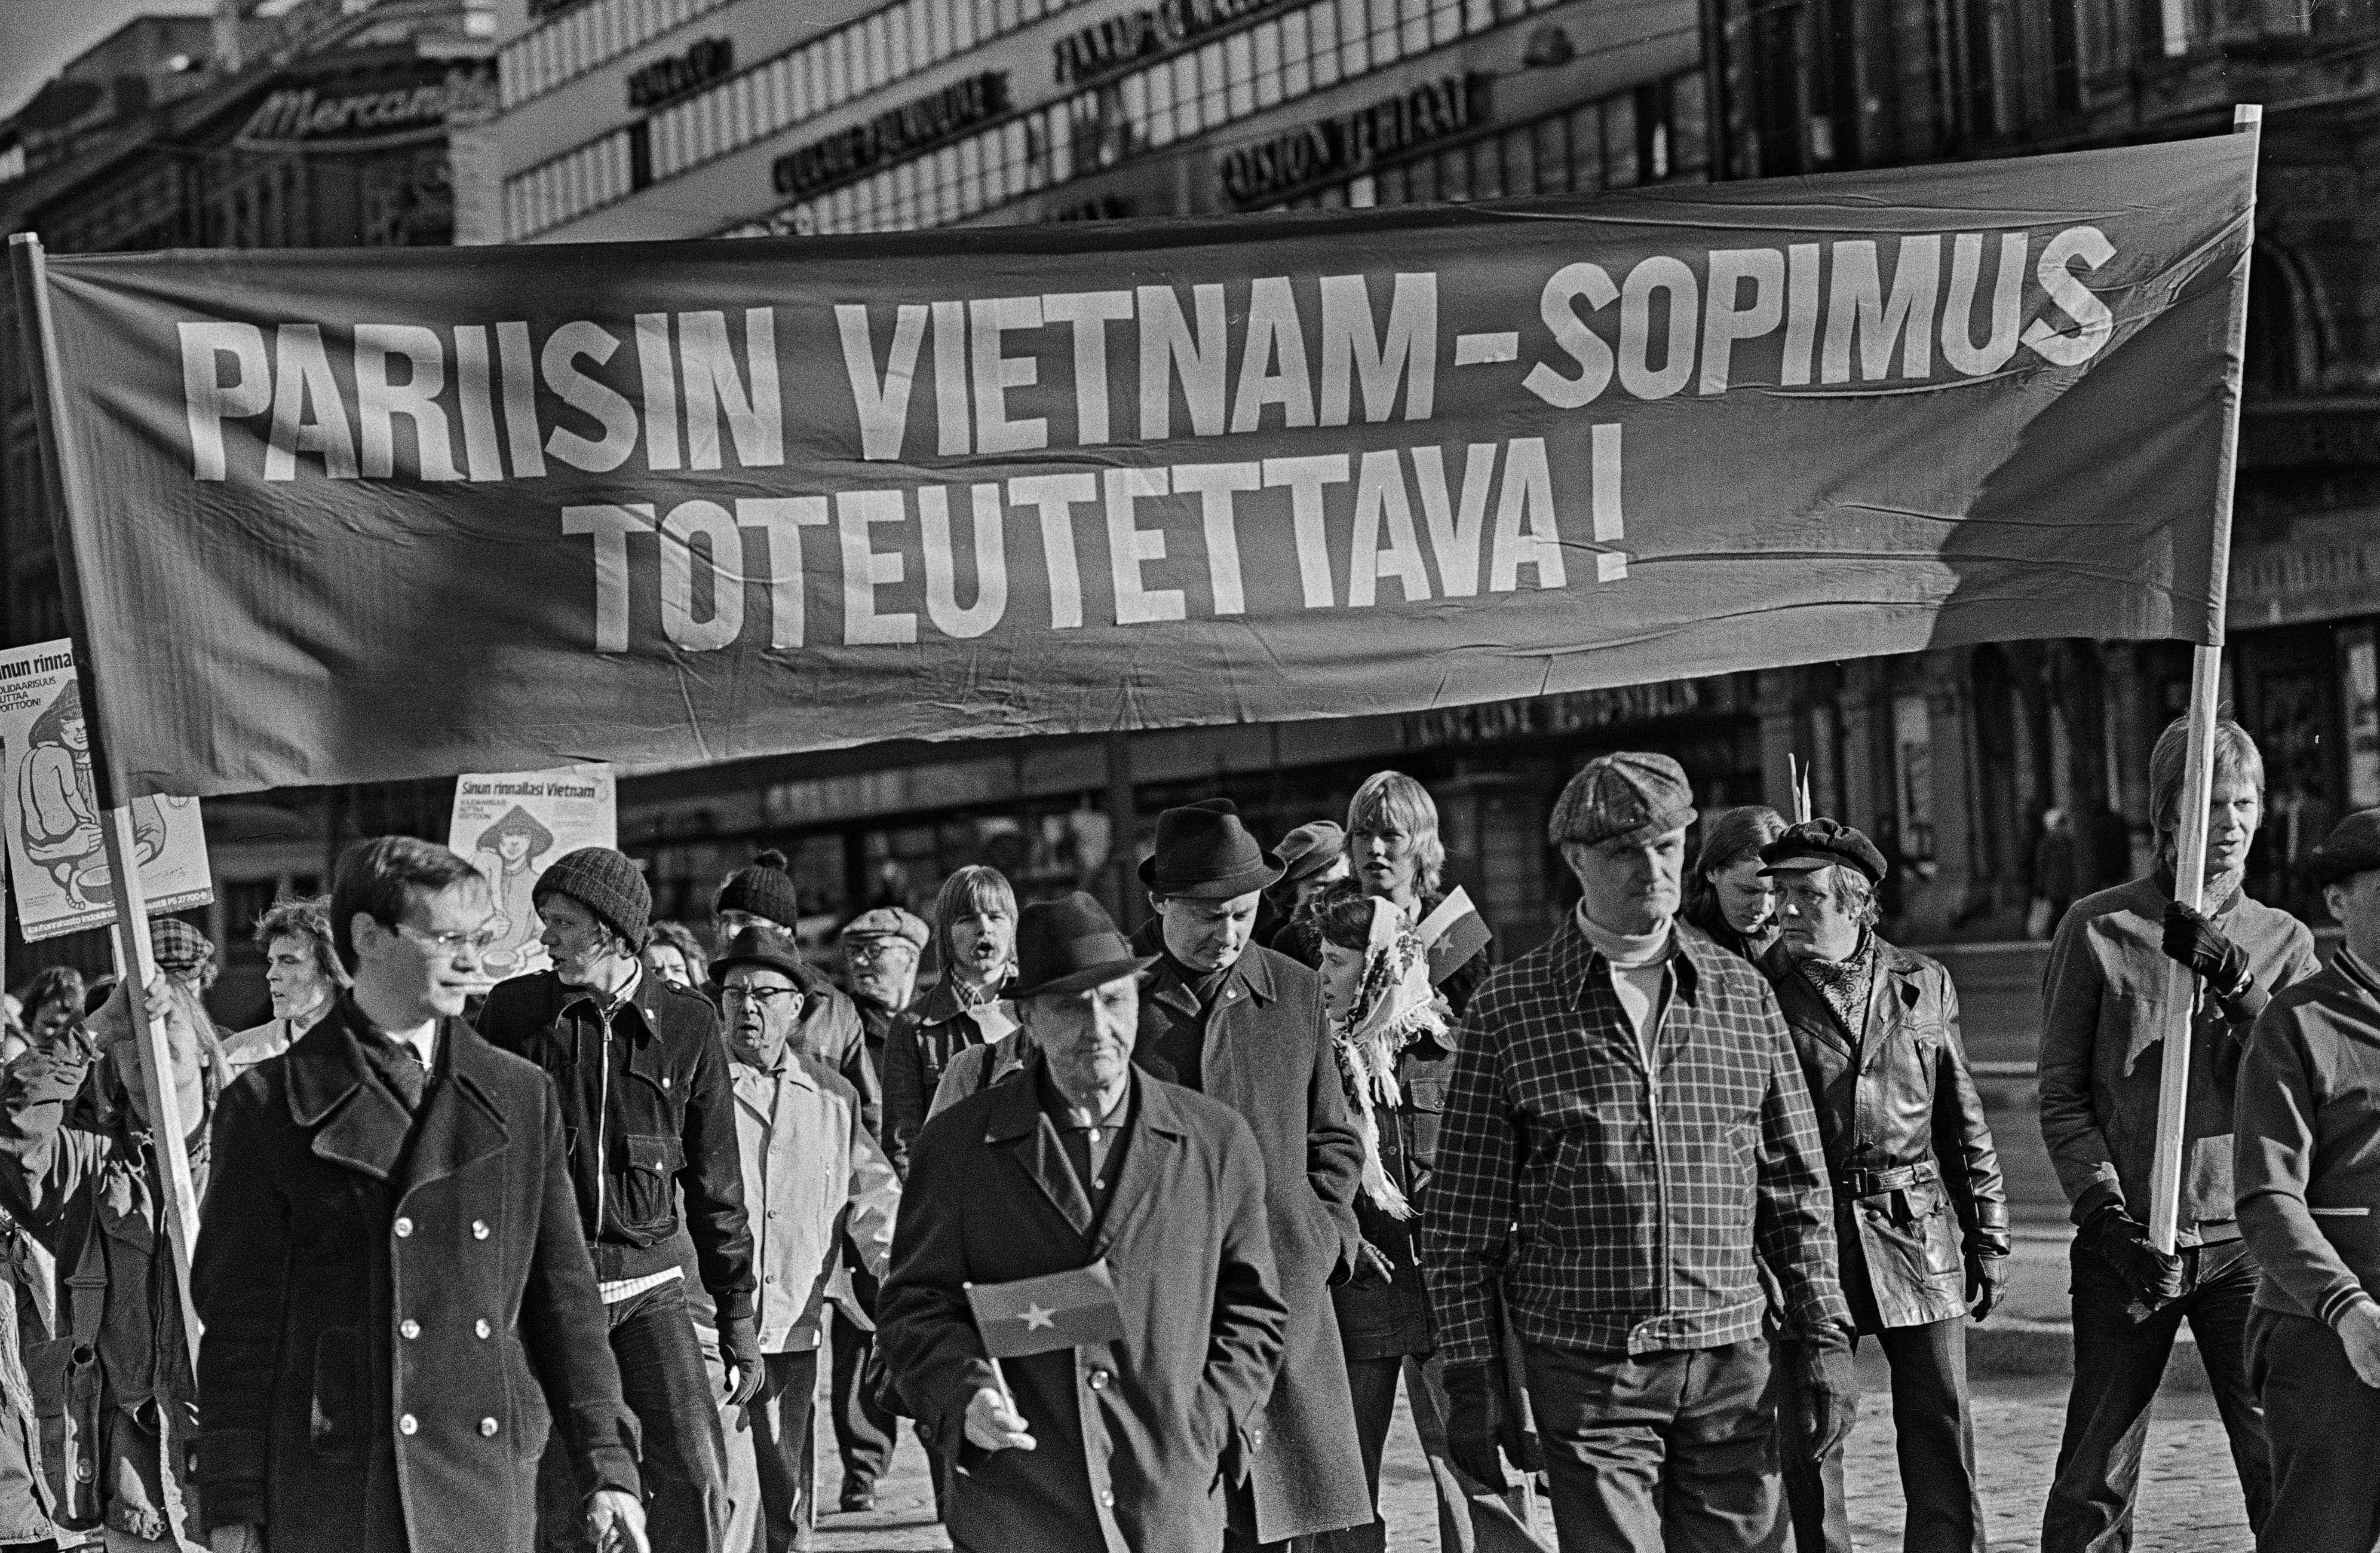 Mielenosoittajia marssimassa ajoradalla Mannerheimintiellä. Mielenosoittajat kantavat banderollia, jossa teksti: Pariisin Vietnam-sopimus toteutettava! Kahdella mielenosoittajalla on kädessään Etelä-Vietnamin kansallisen vapautusrintaman pienoislippu.